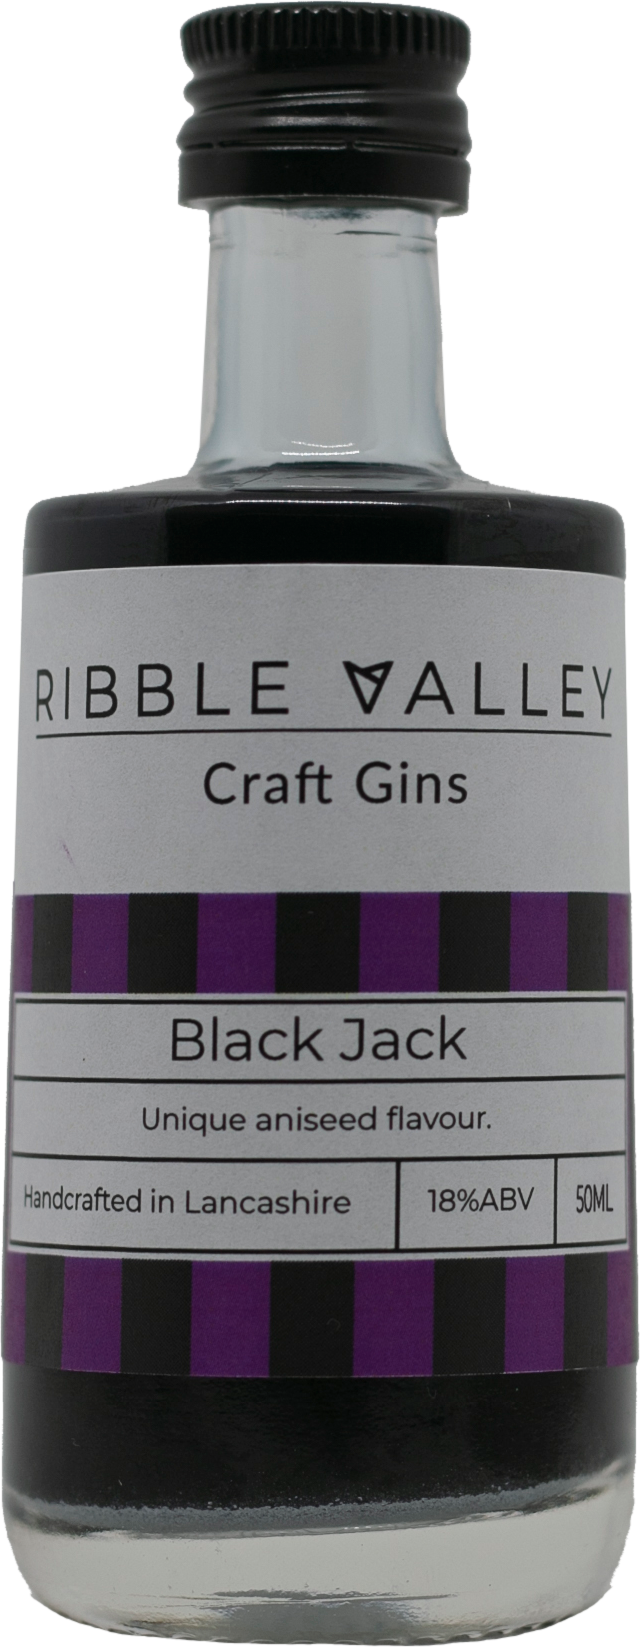 Black Jack Flavoured Gin Liqueur